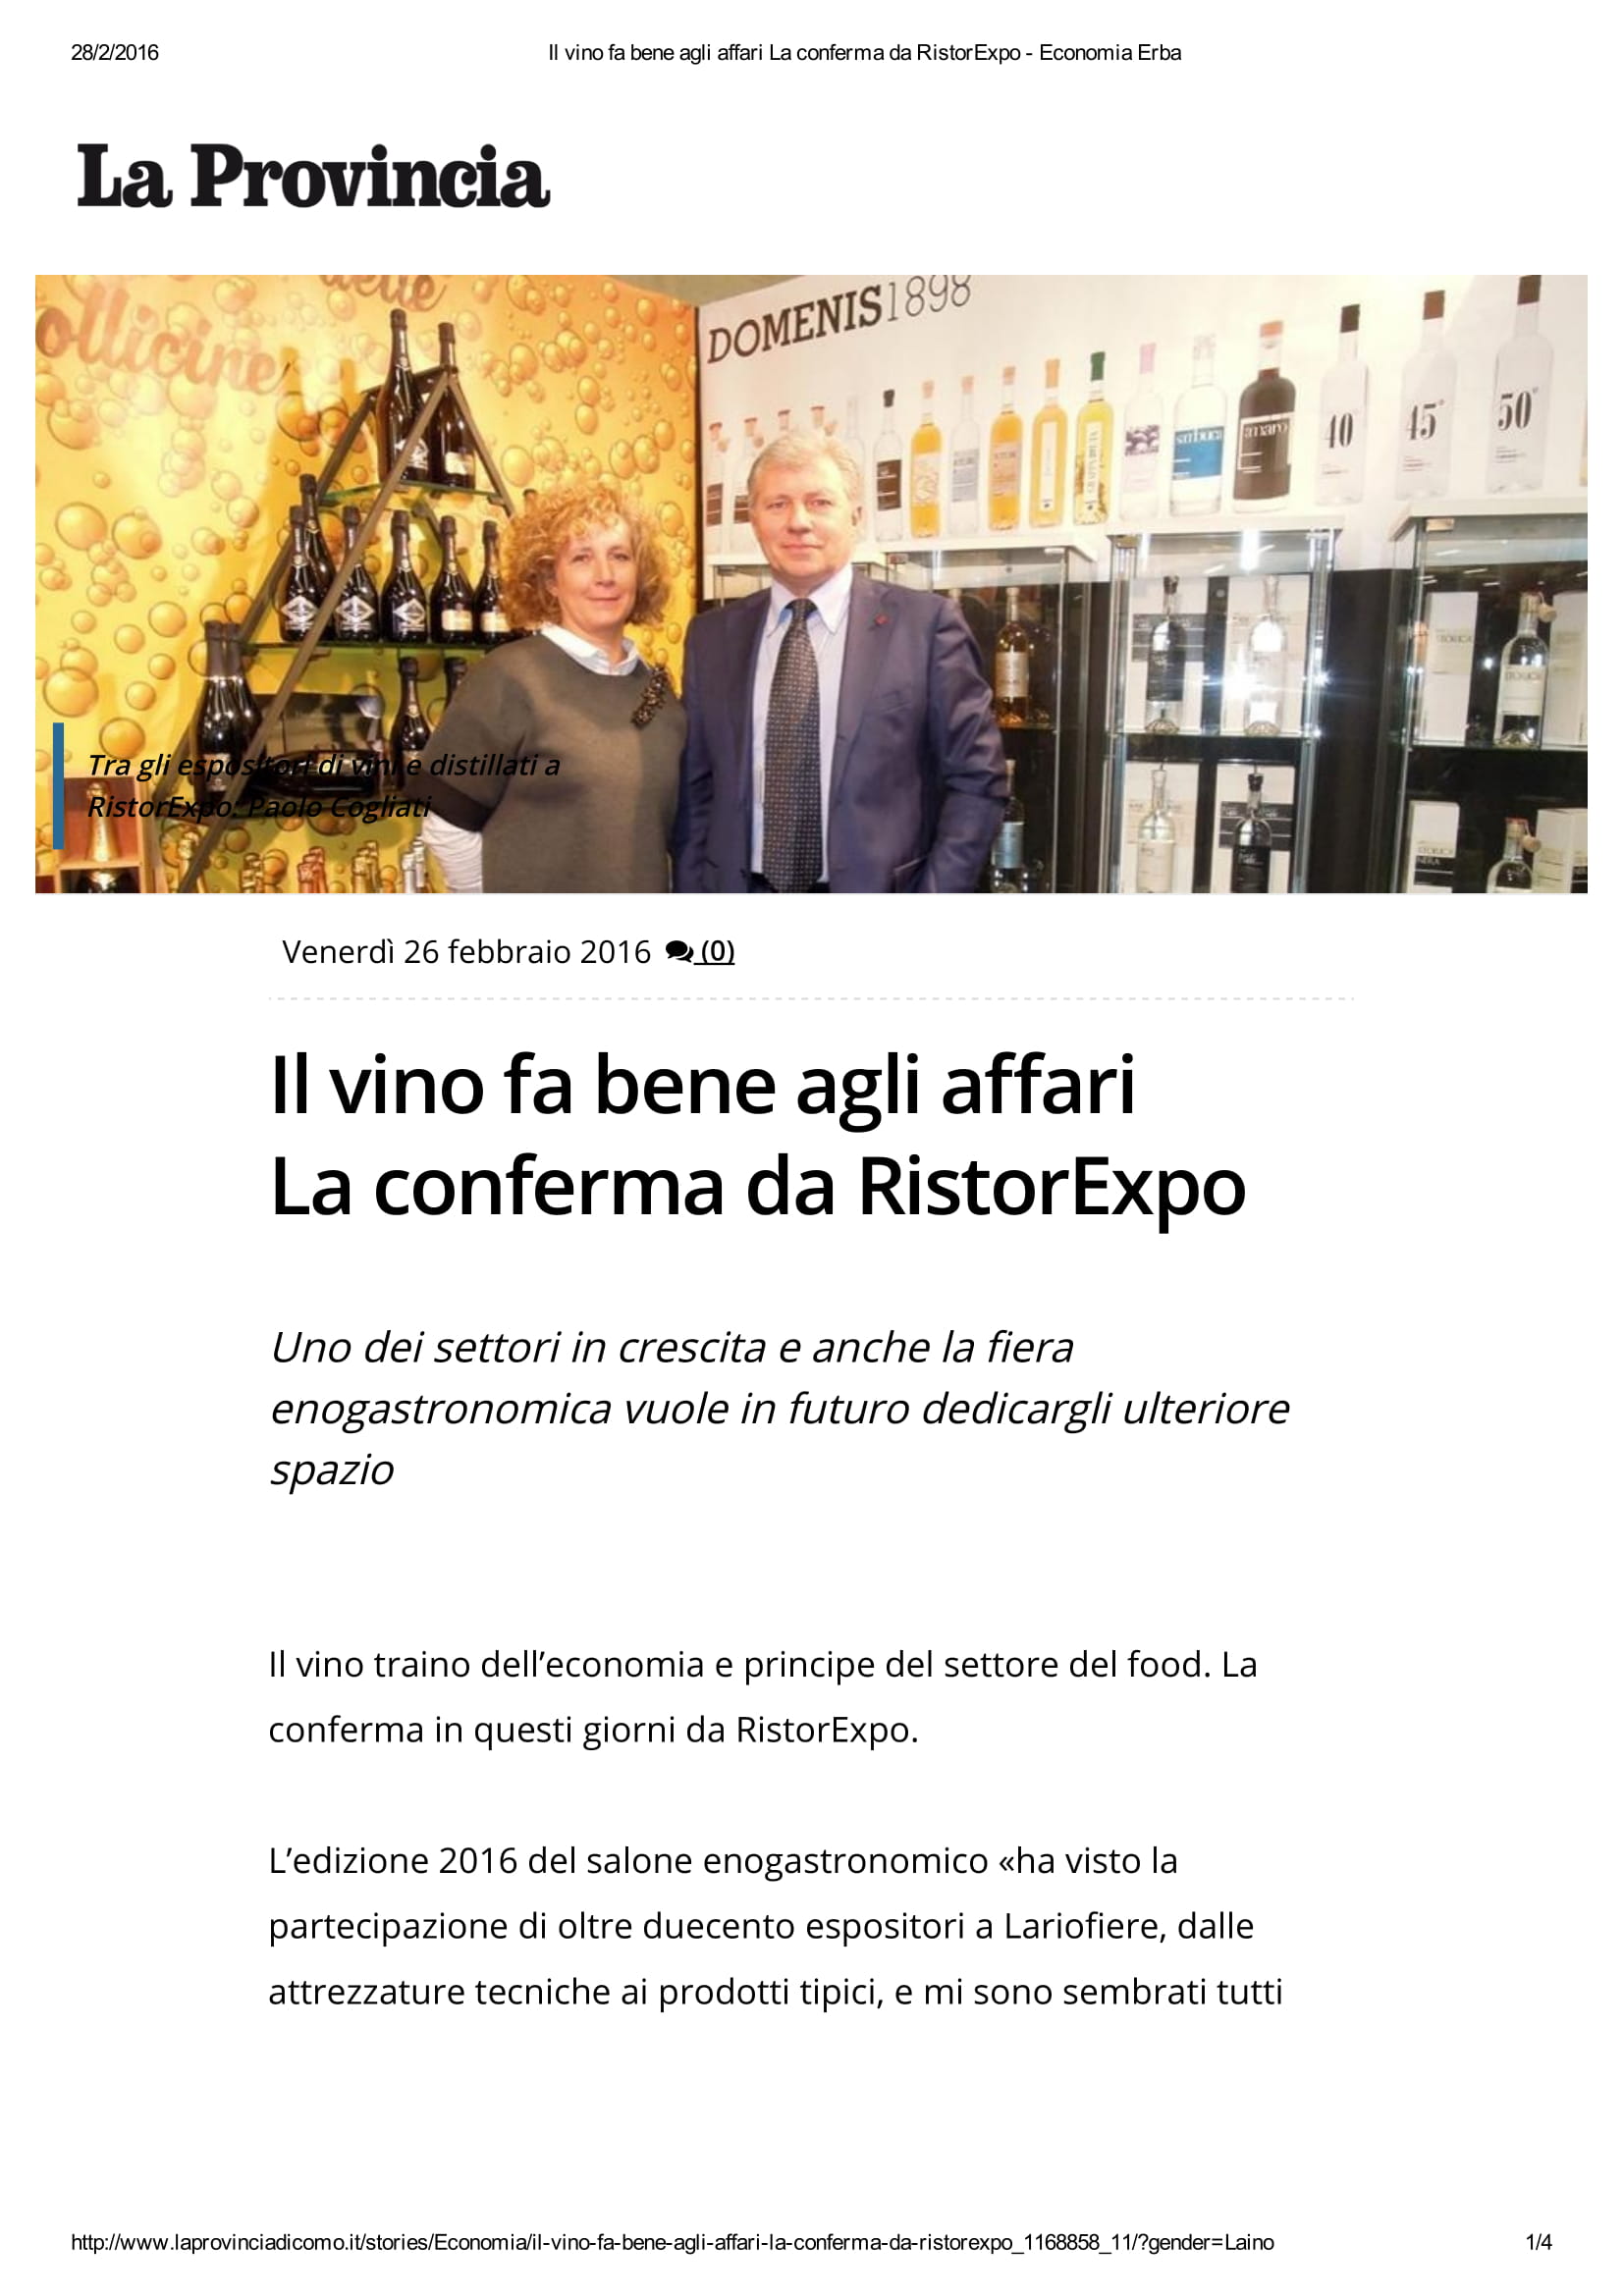 2016 02 26 Il vino fa bene agli affari La conferma da RistorExpo